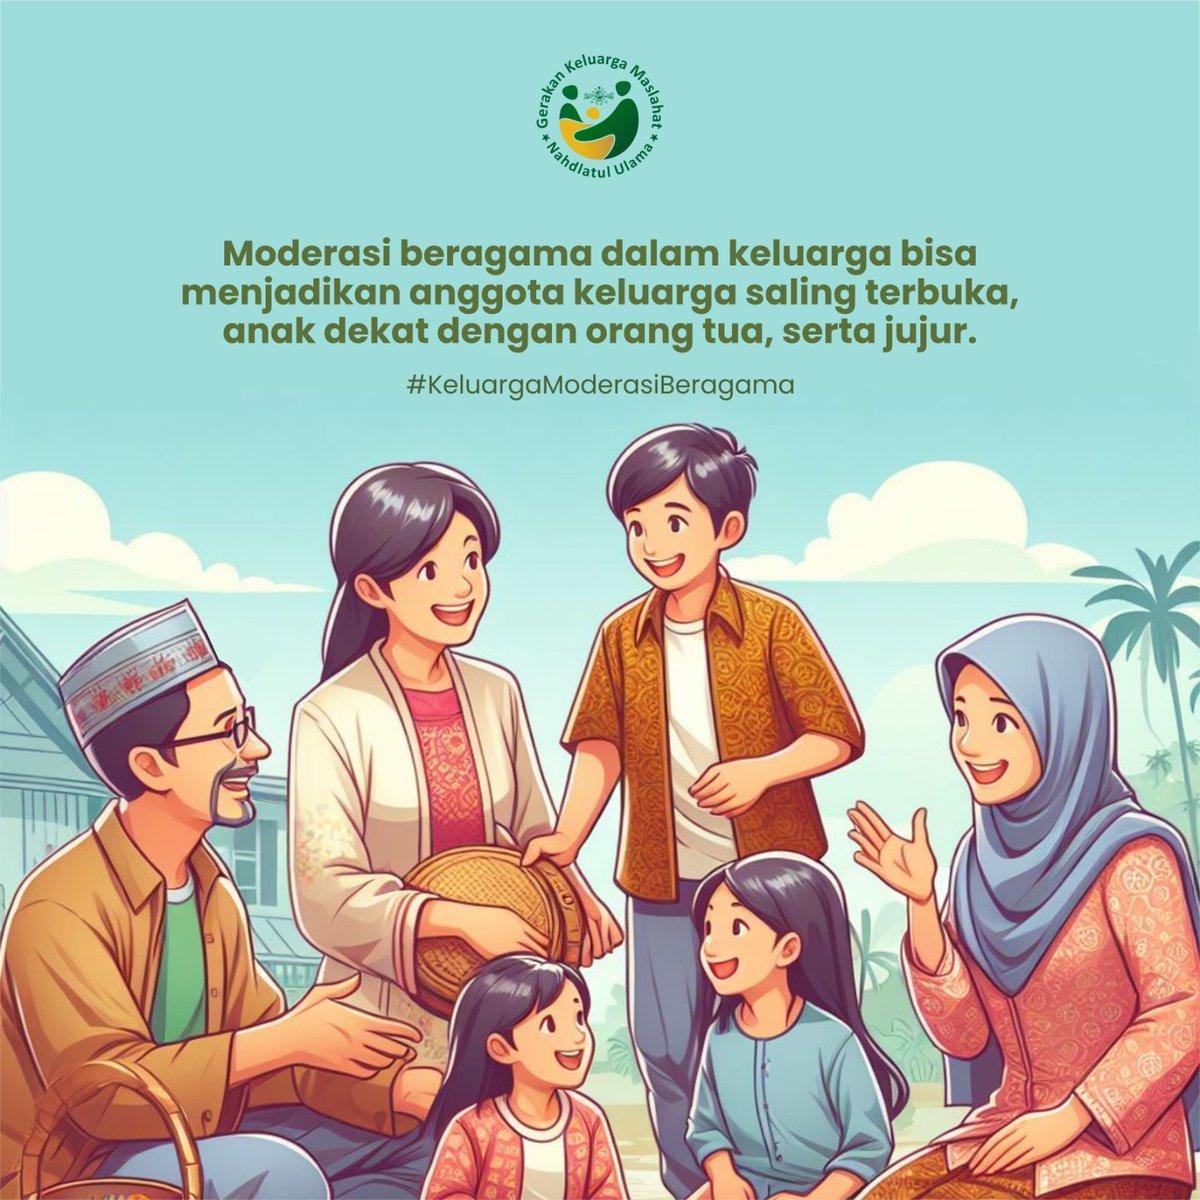 Moderasi beragama sangat penting diajarkan dan diterapkan orang tua kepada anak²nya agar mereka jadi pribadi yang terbuka, bisa menerima perbedaan² yang ada. #KeluargaModerasiBeragama